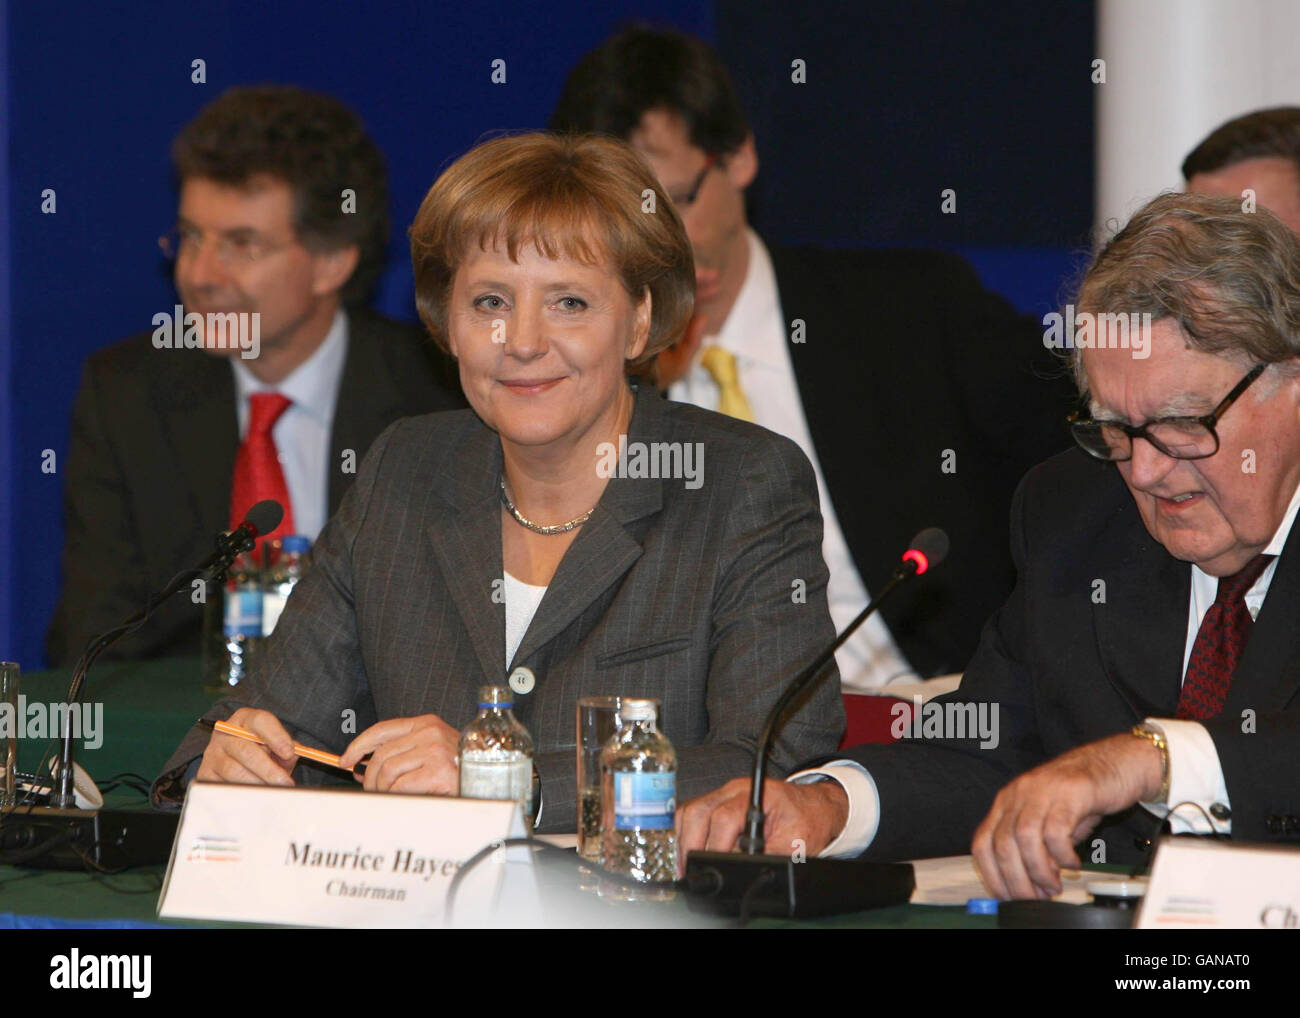 Il Presidente del Forum Nazionale sull'Europa Maurice Hayes presenta la cancelliera tedesca Angela Merkel prima di rivolgere oggi il suo discorso ai membri del Forum al Castello di Dublino. Foto Stock